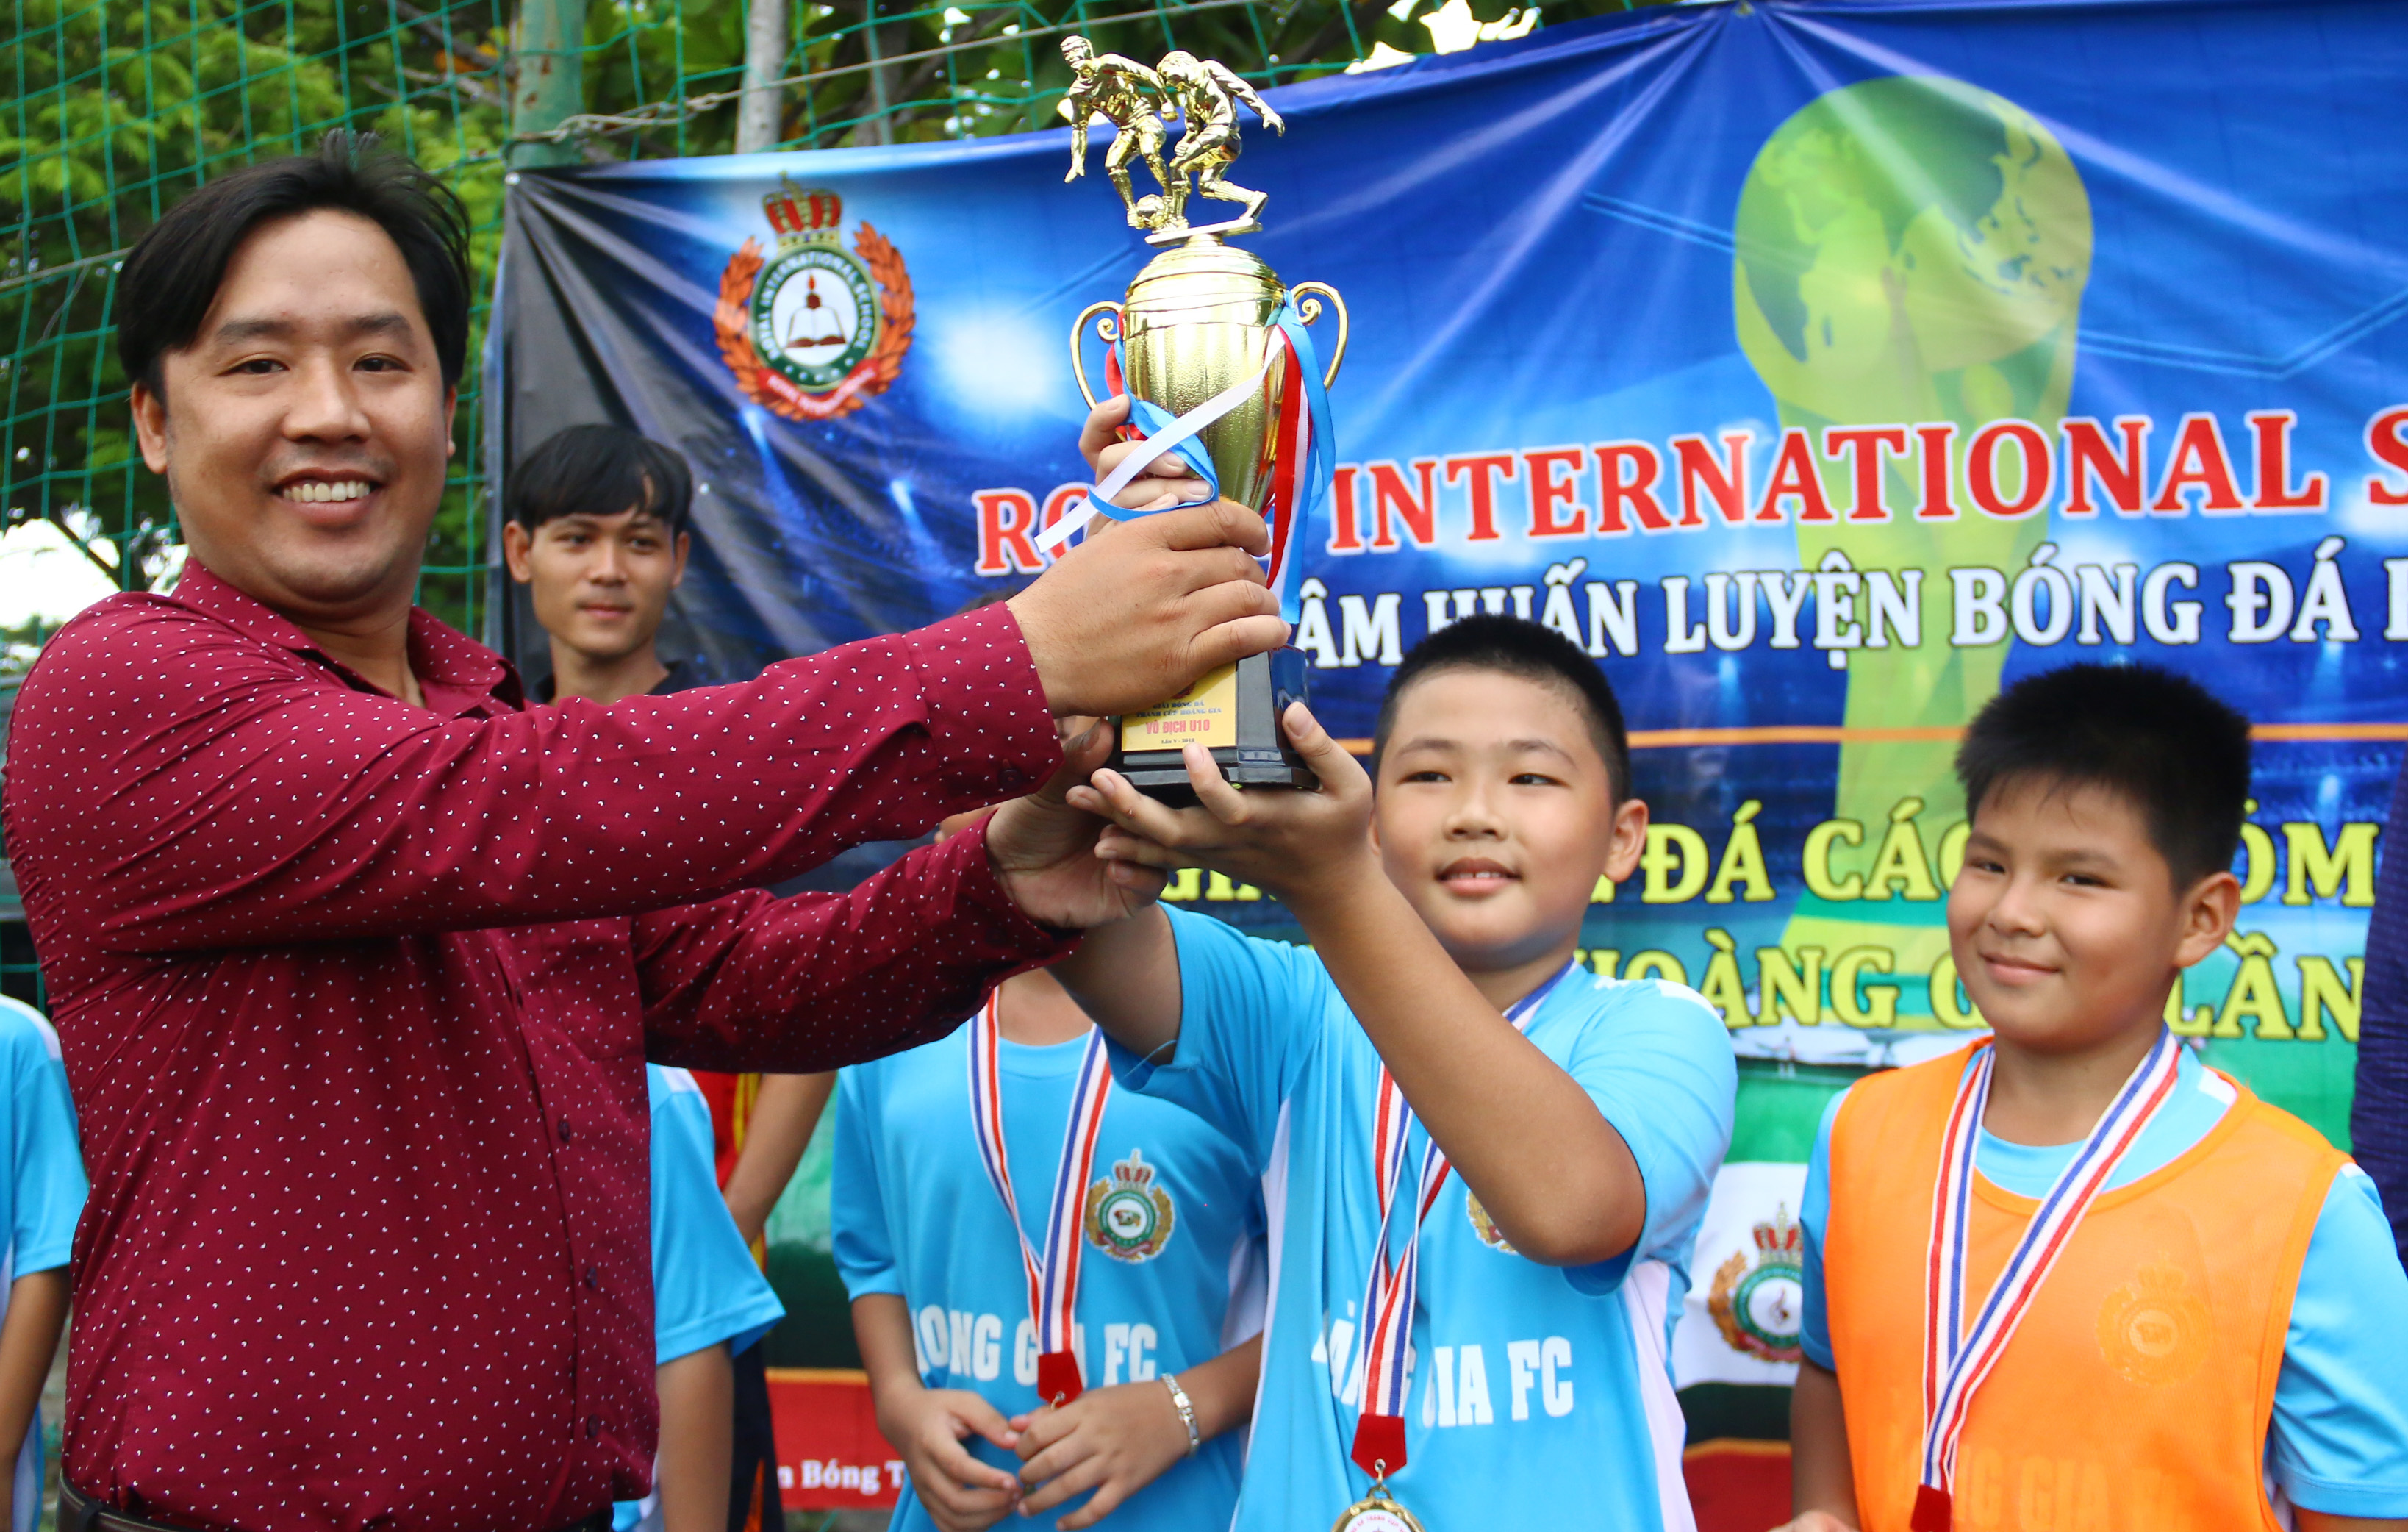 U10 Bình Thạnh, U13 Tân Phú vô địch giải bóng đá Hoàng Gia 2018 - Bóng Đá